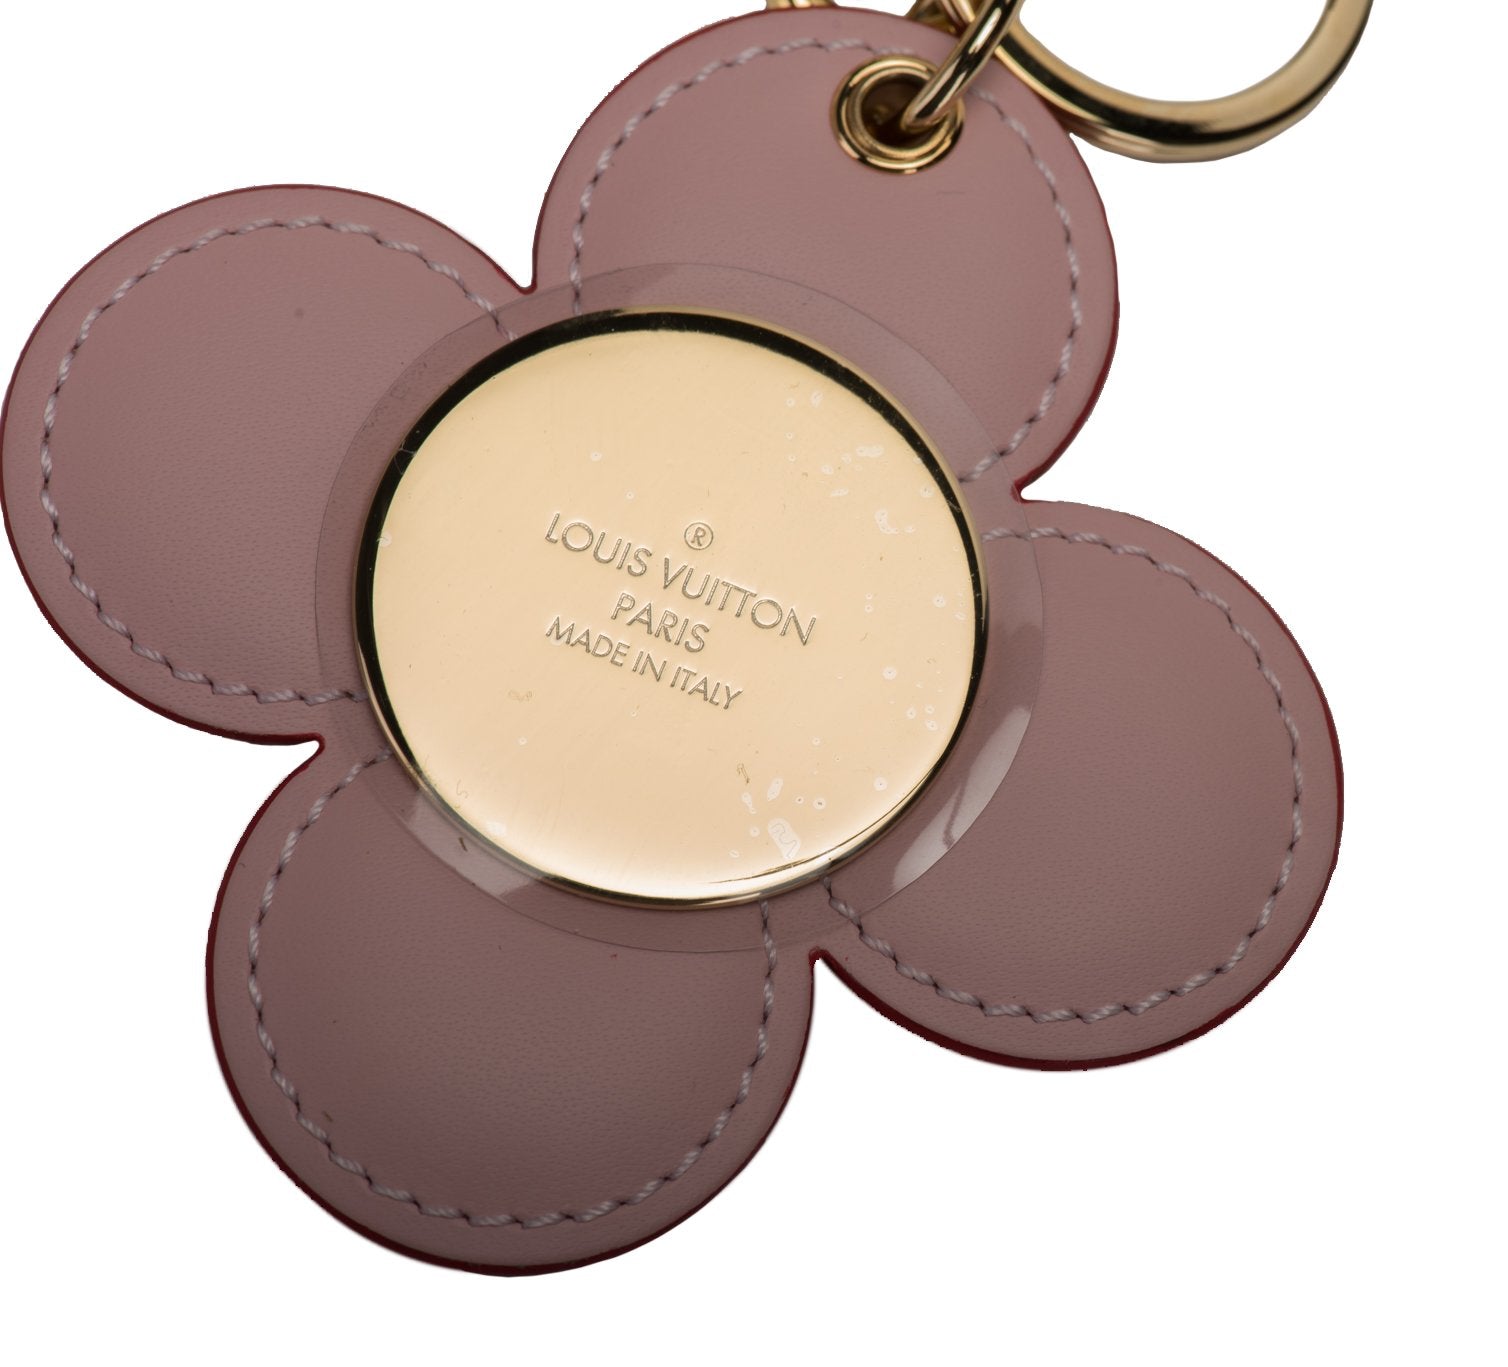 Louis Vuitton Flower Keychain Charm - Vintage Lux